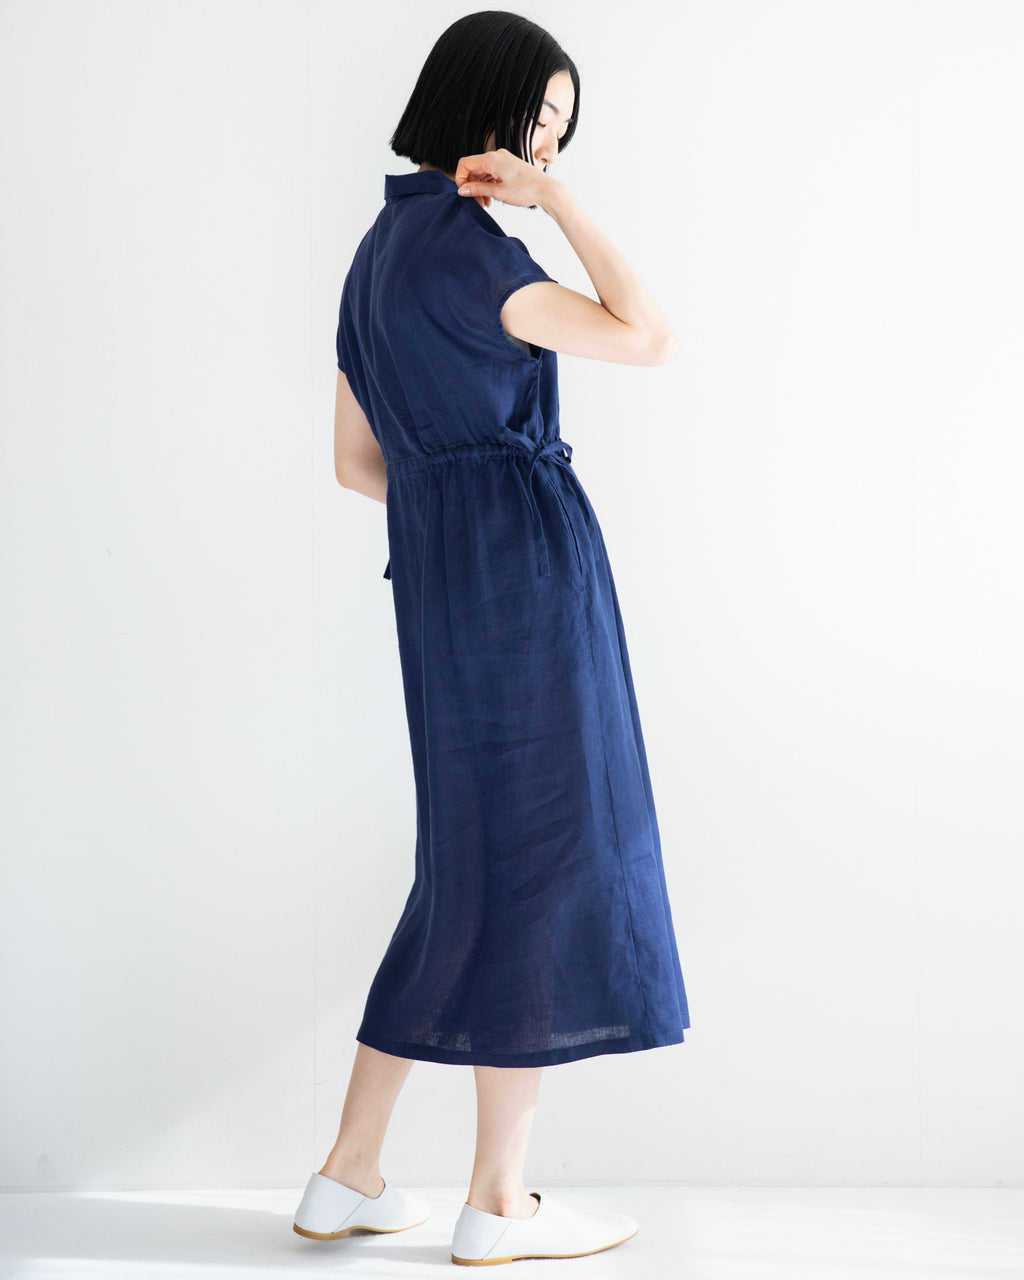 Kaho Dress: Indigo Blue